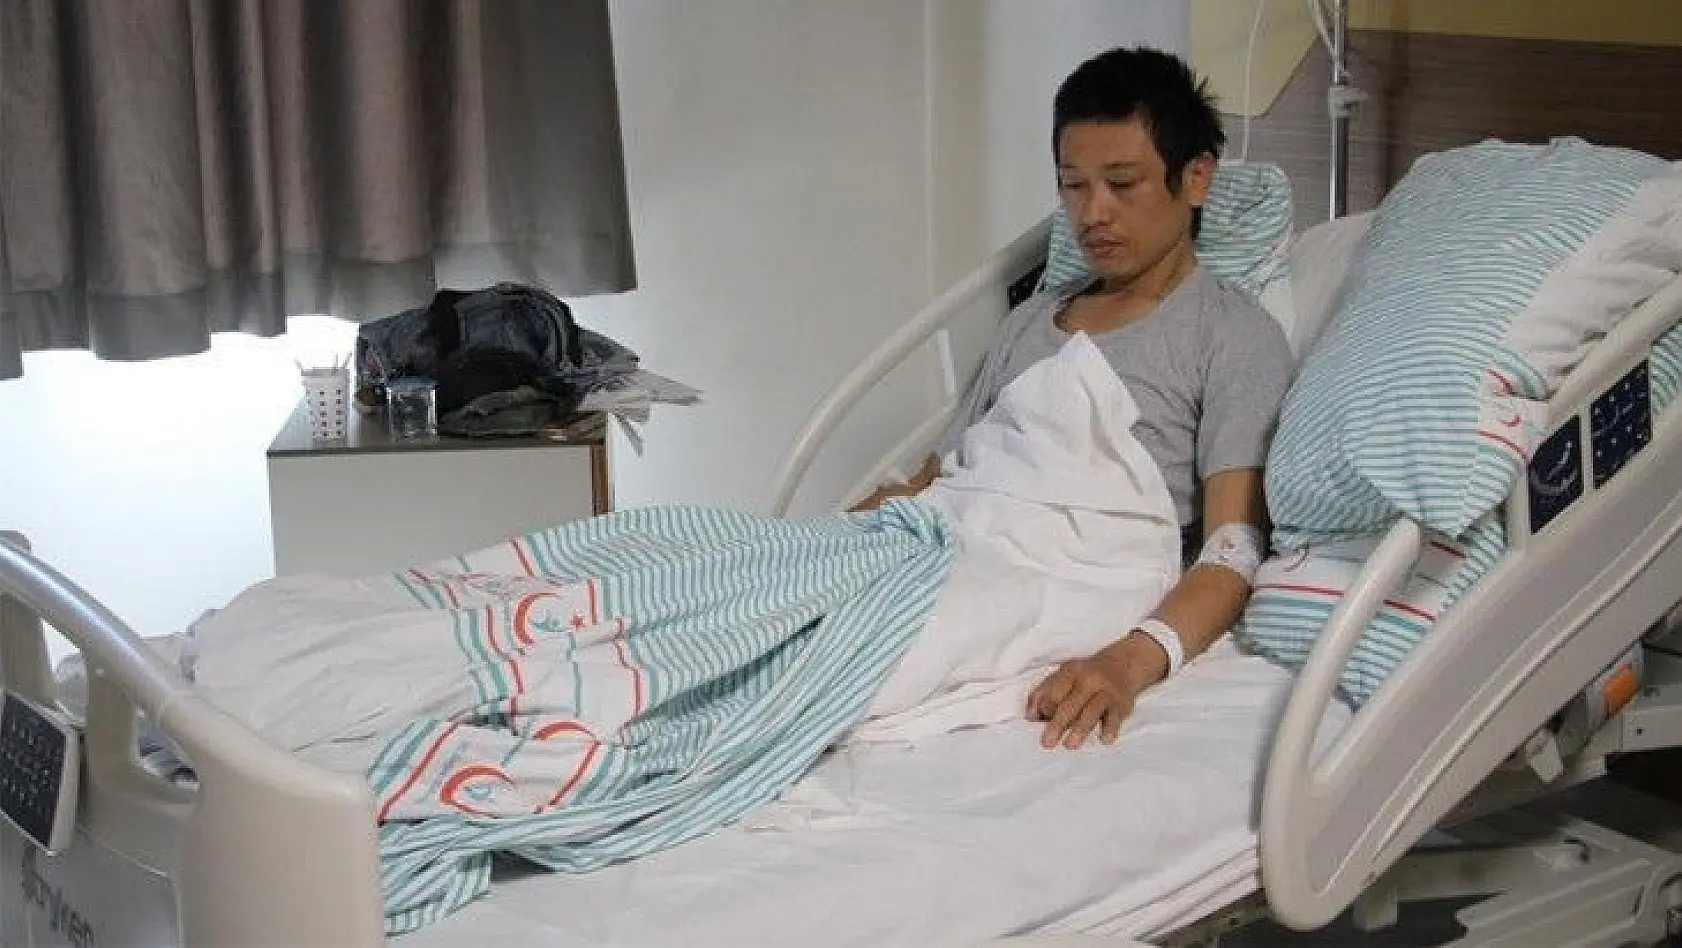 12 yıl önce dünya turuna çıkan Japon turist Elazığ'da bıçaklandı